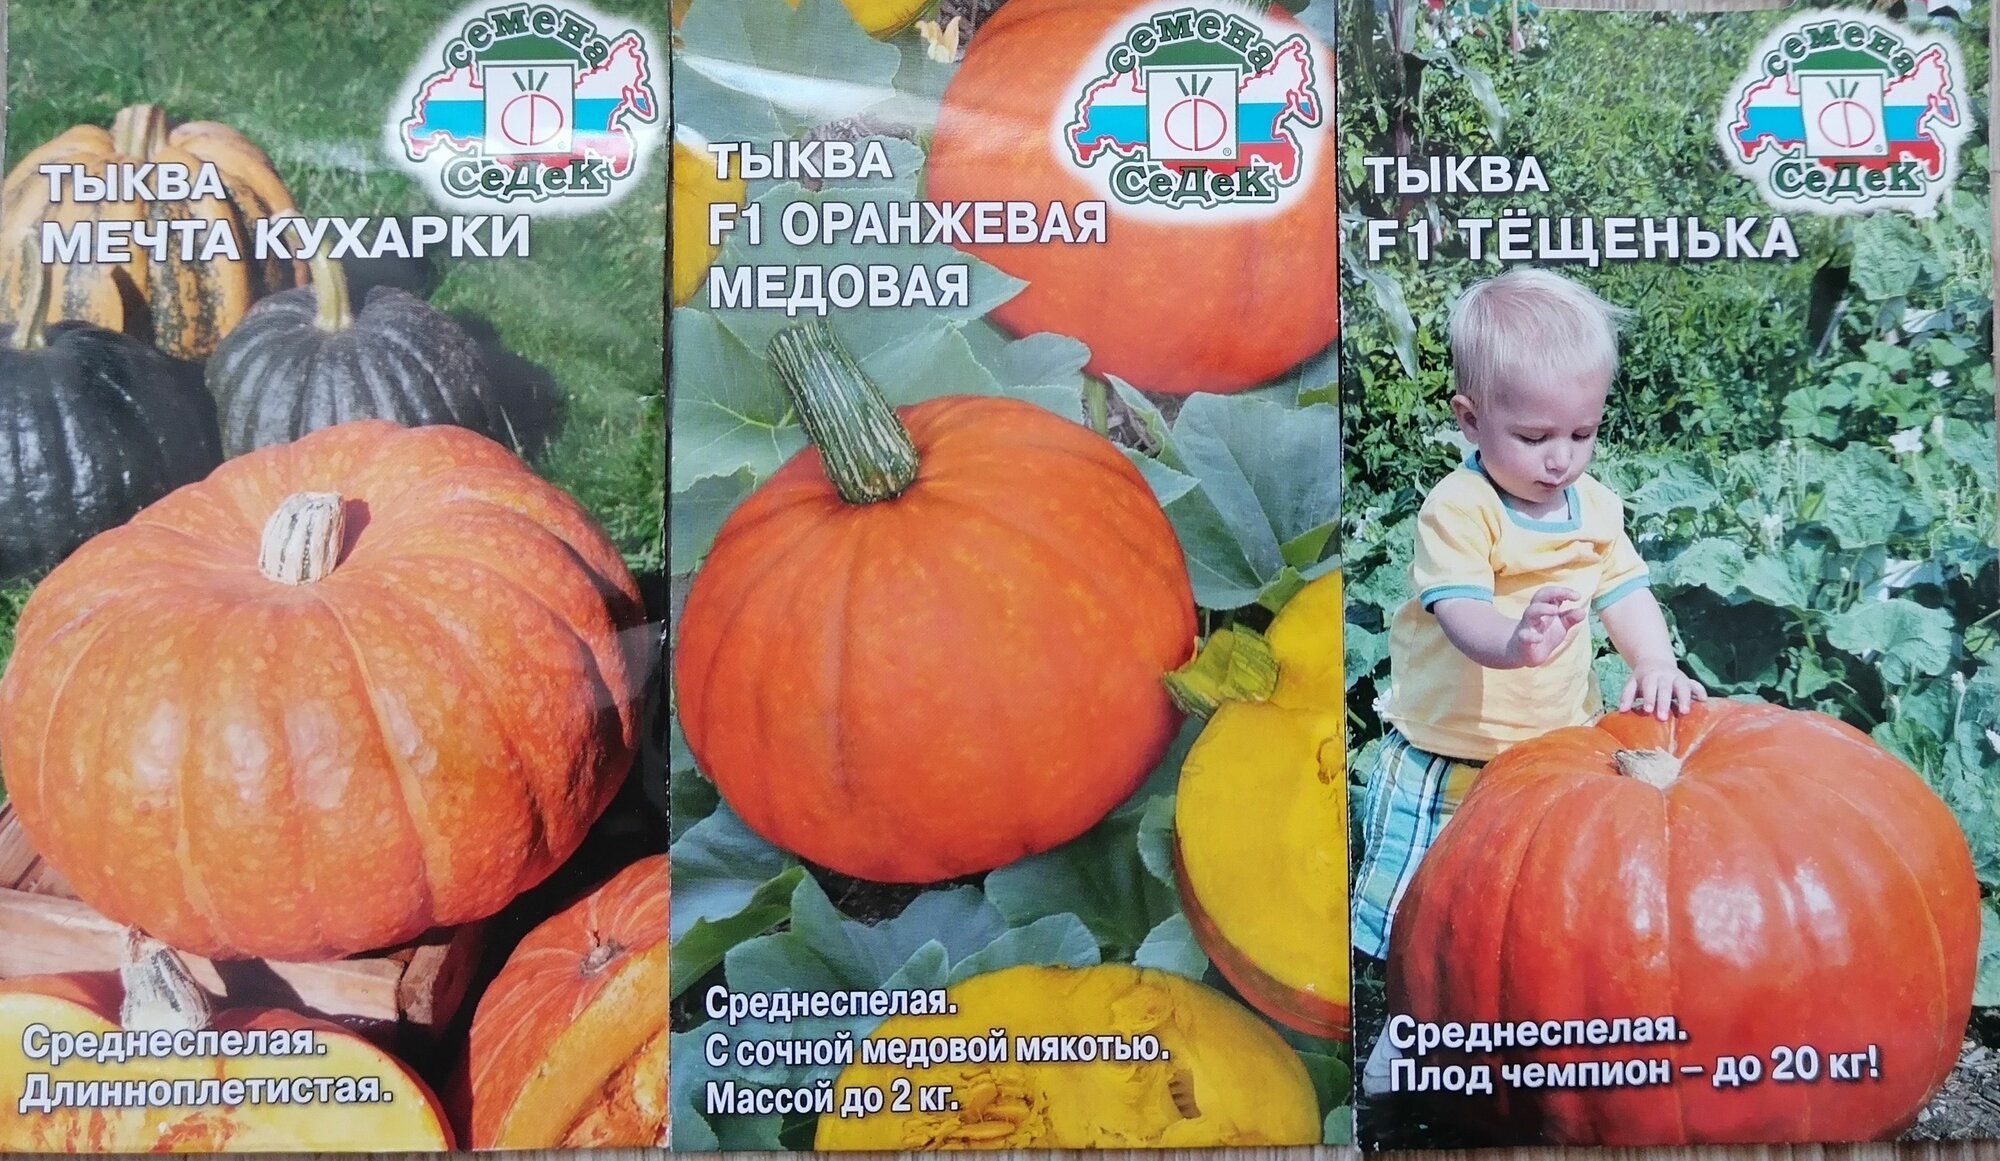 Набор из 3х сортов высокоурожайных крупноплодных тыкв (Тёщенька+Мечта кухарки+Оранжевая Медовая) от агрофирмы СеДеК